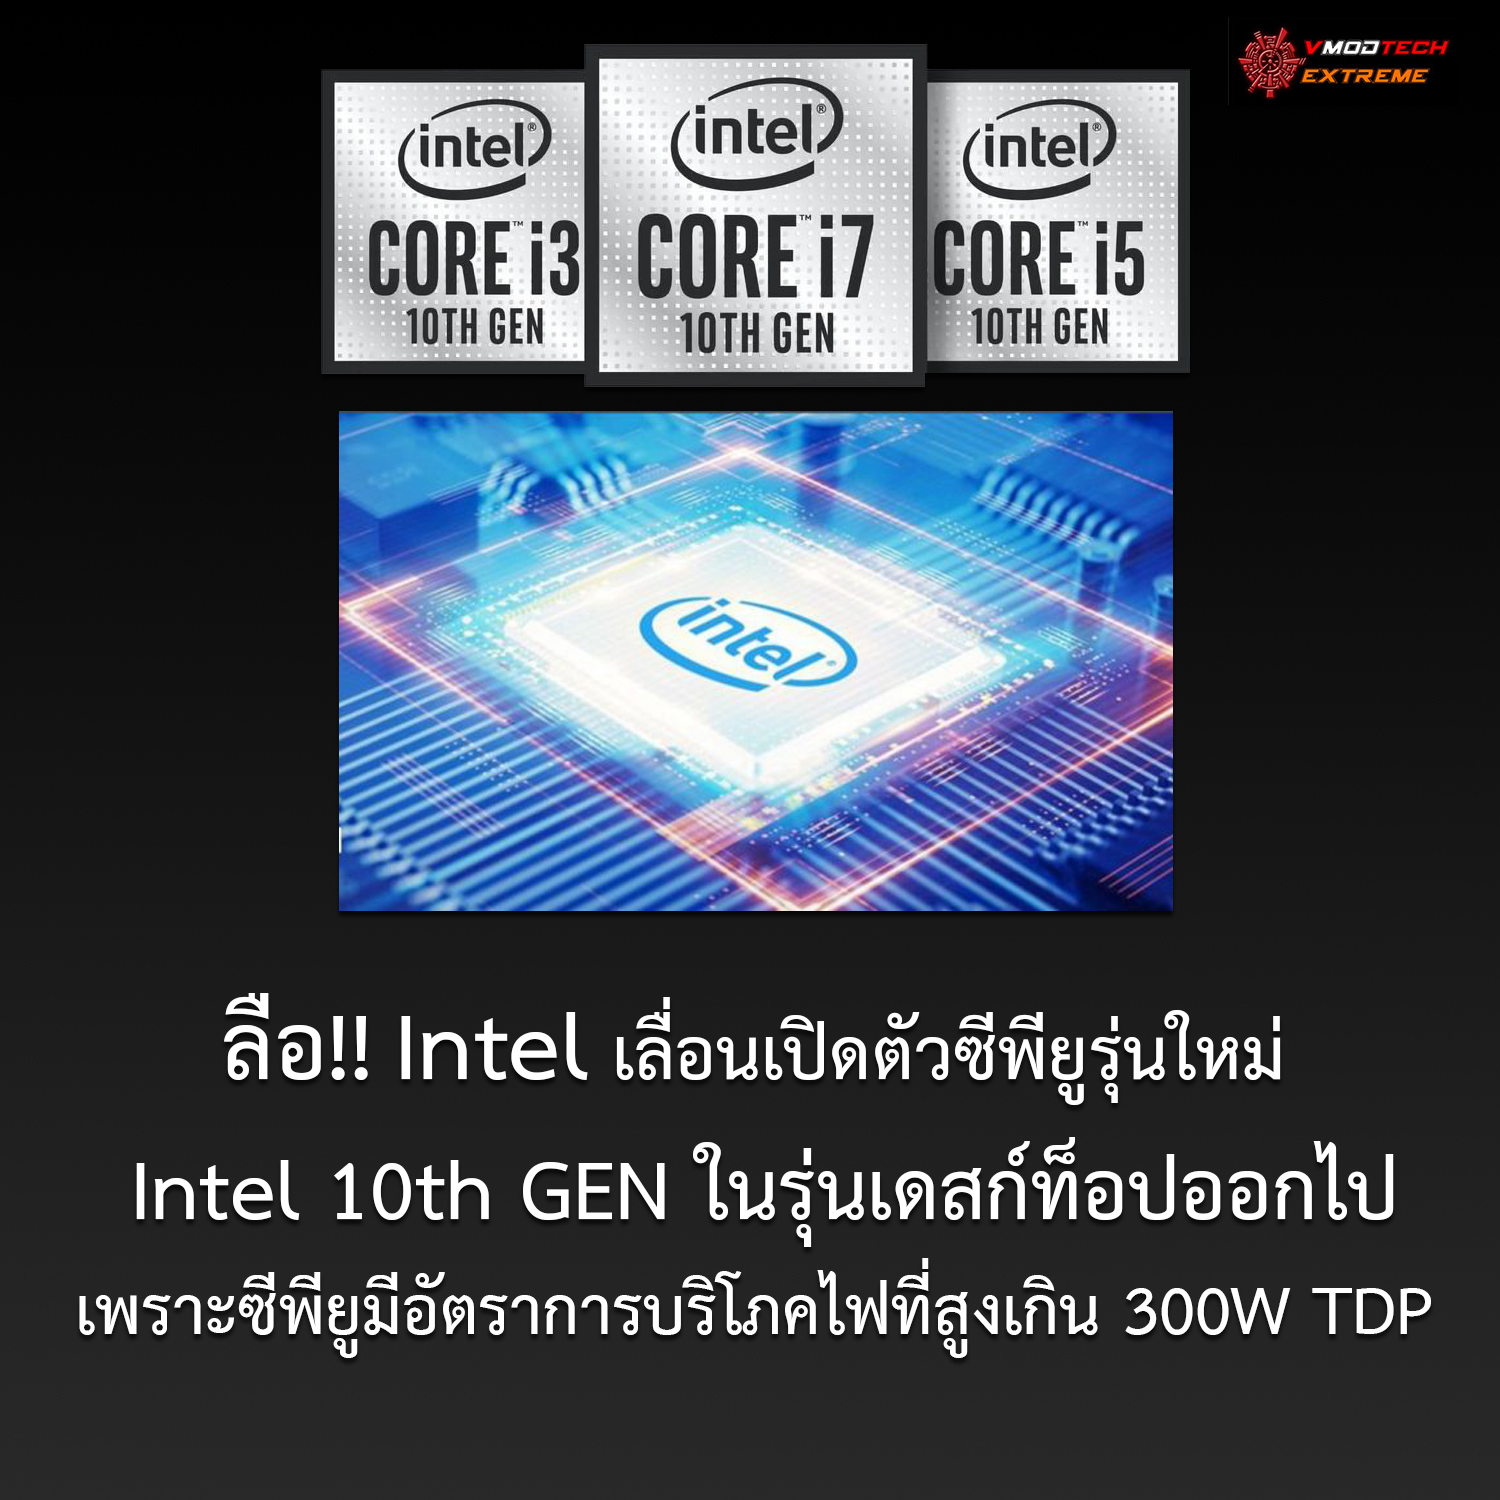 ลือ!! Intel เลื่อนเปิดตัวซีพียูรุ่นใหม่ Intel 10th GEN ในรุ่นเดสก์ท็อปออกไปเพราะซีพียูมีอัตราการบริโภคไฟที่สูงเกิน 300W TDP 